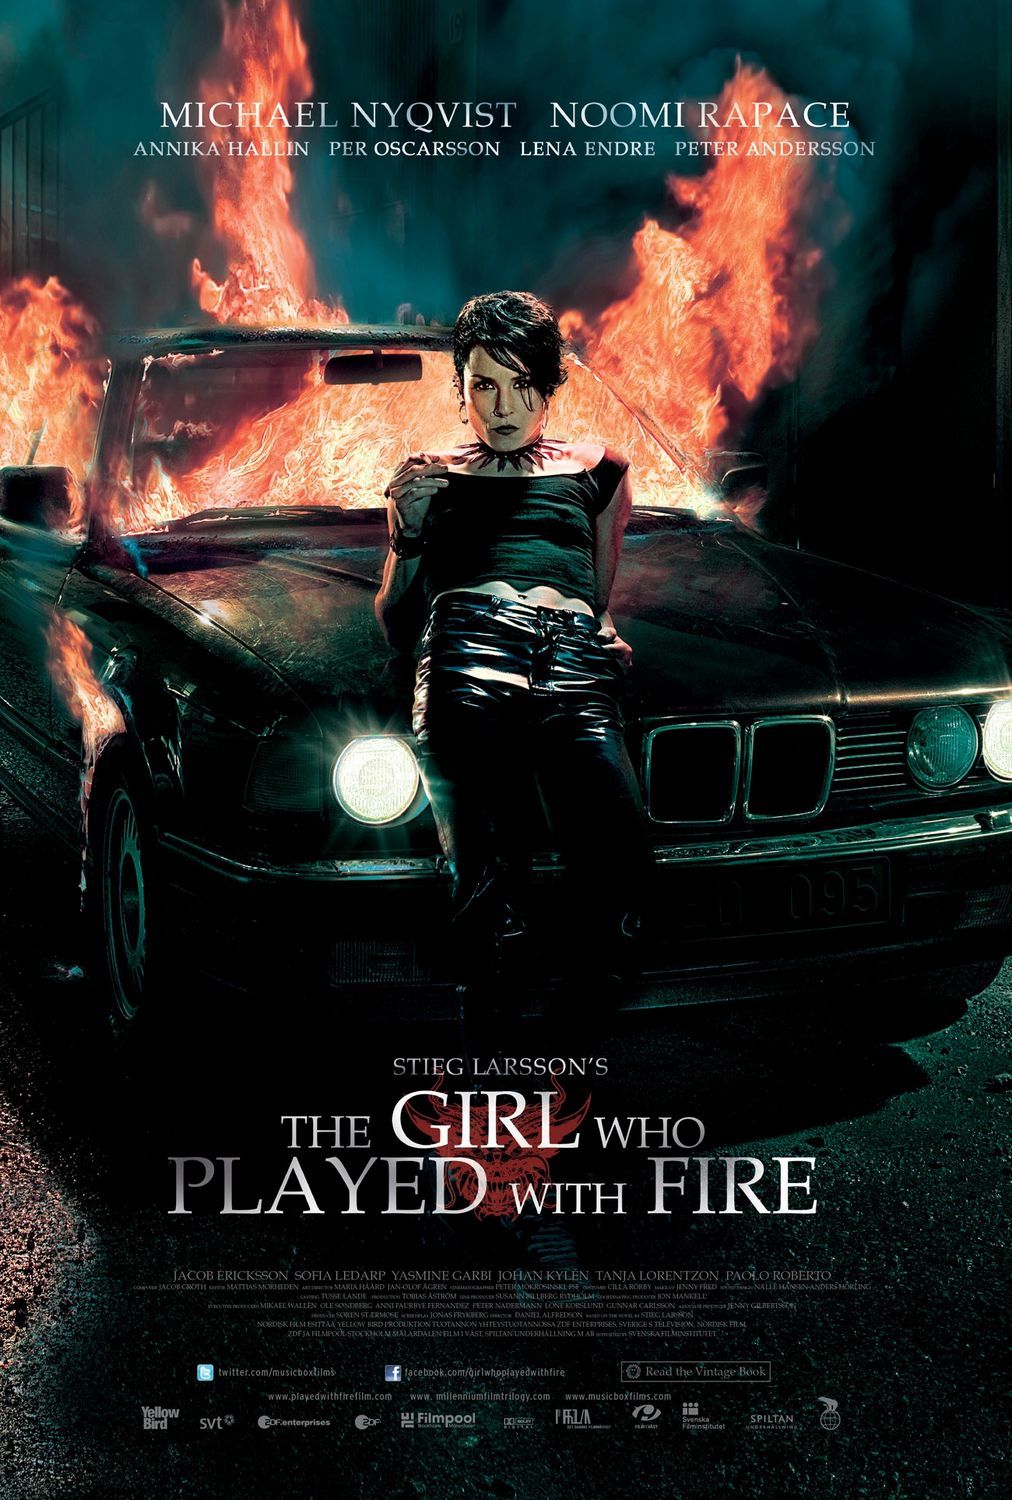 ดูหนังออนไลน์ฟรี The Girl Who Played With Fire 2009 เว็บดูหนังใหม่ฟรี